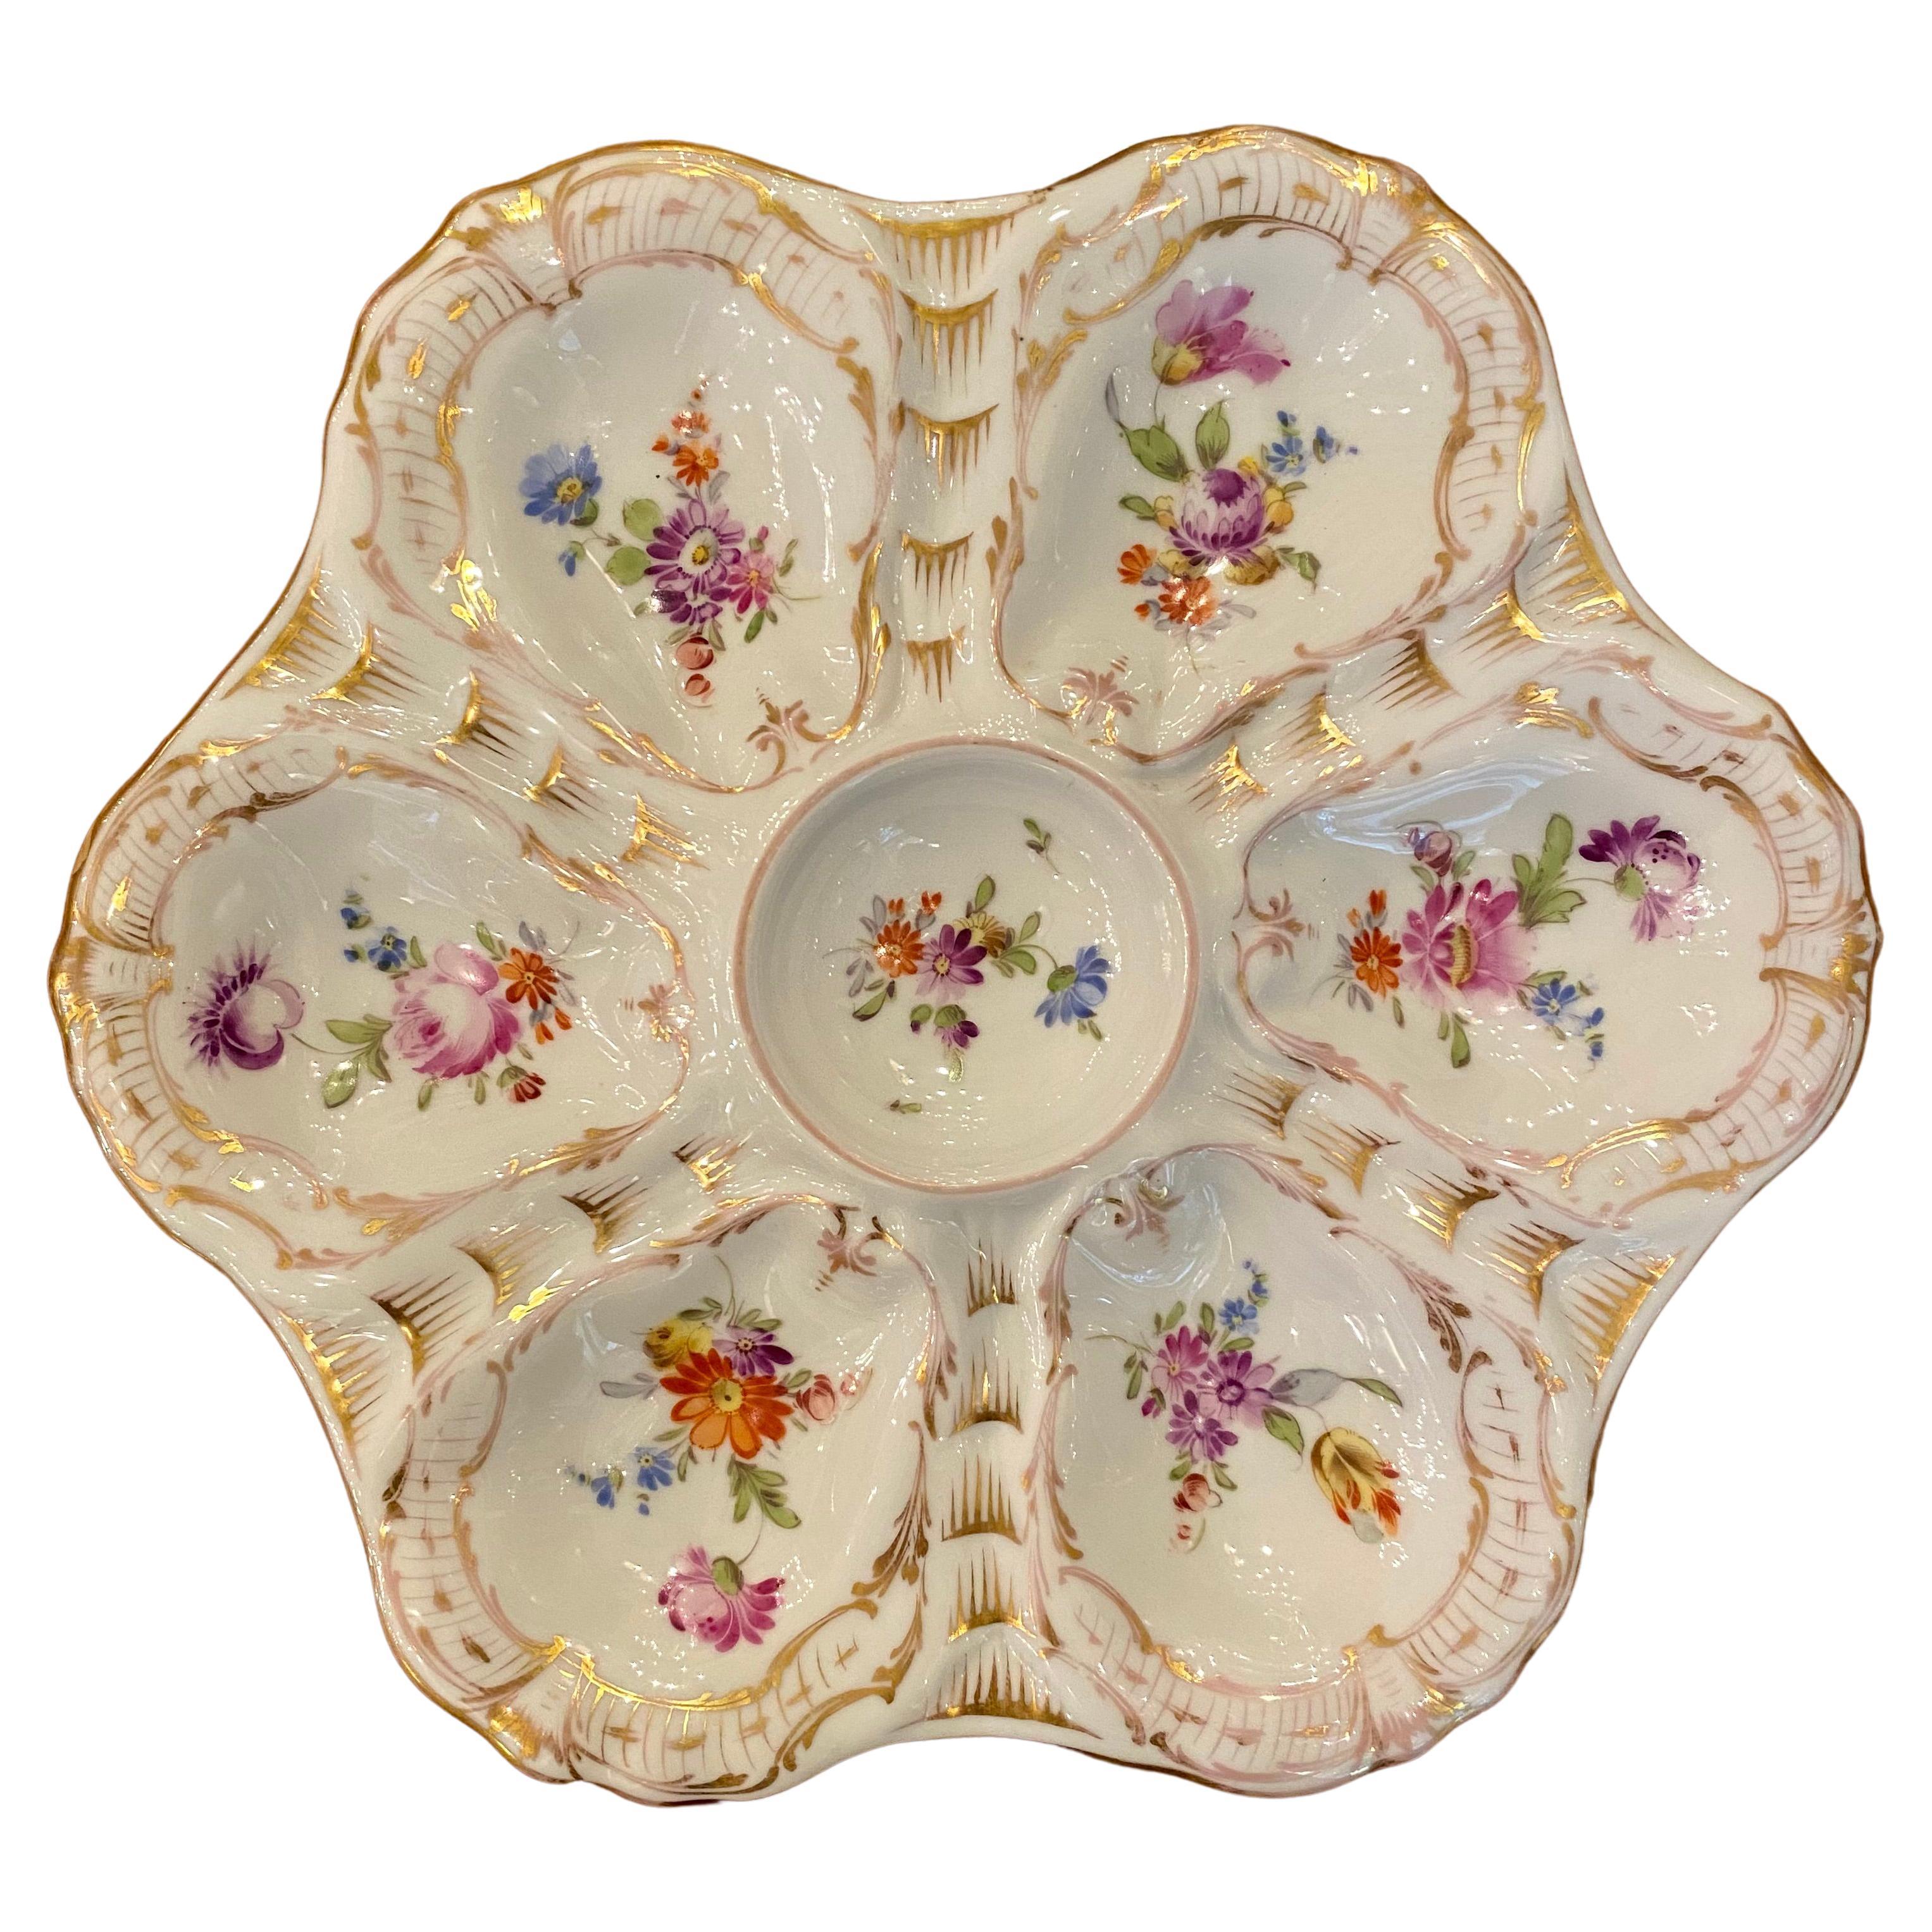 Antique German Floral Porcelain Oyster Plate Signed "Rk Dresden, " circa 1910